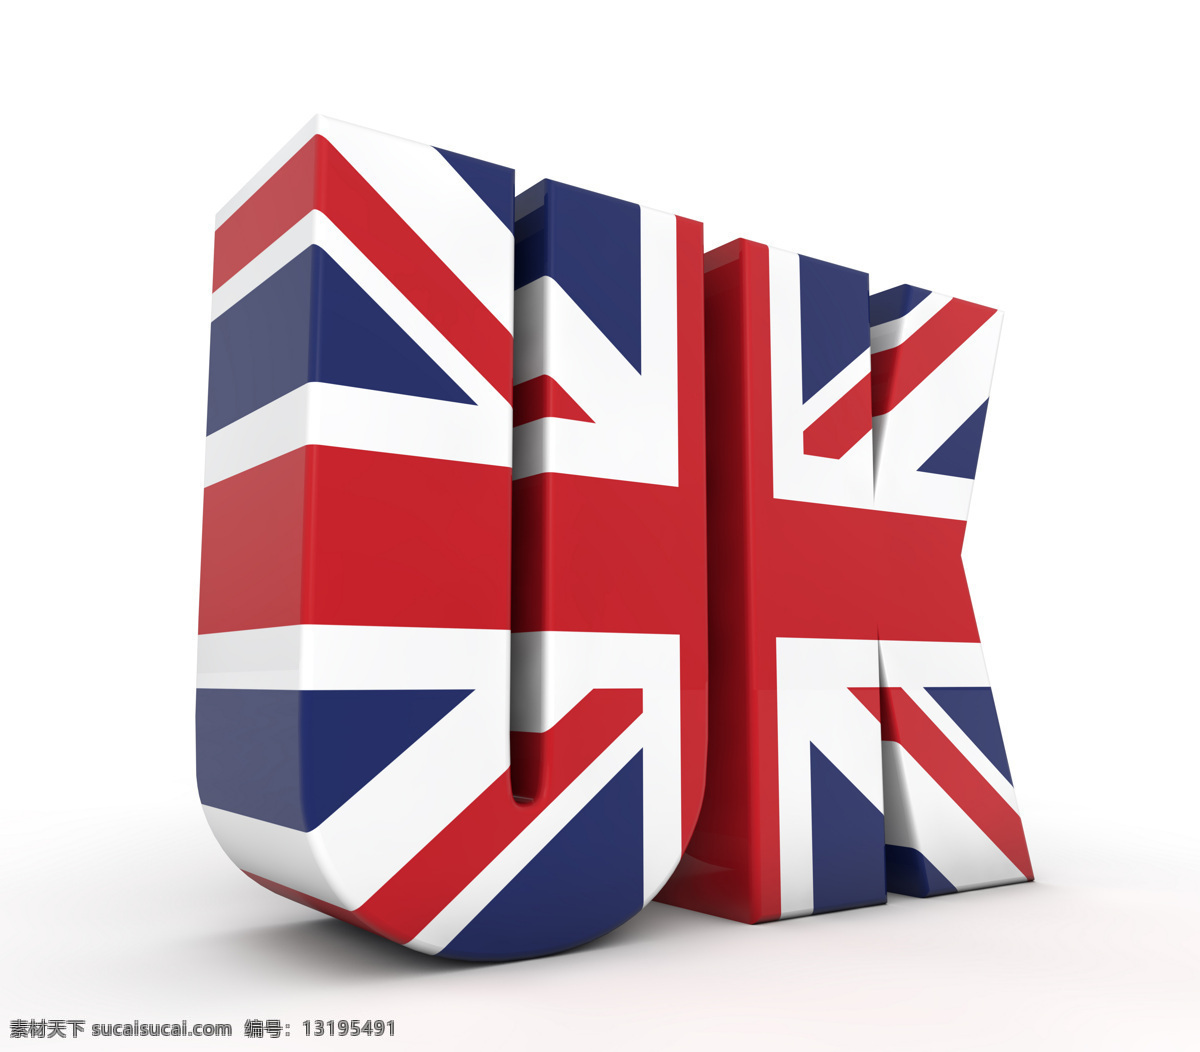 英国 国旗 立体 字母 欧美经典 伦敦 欧美风格 英国主题 英国元素 英国特色图片 英国国旗 国旗字母 立体字母 uk 国旗图片 生活百科